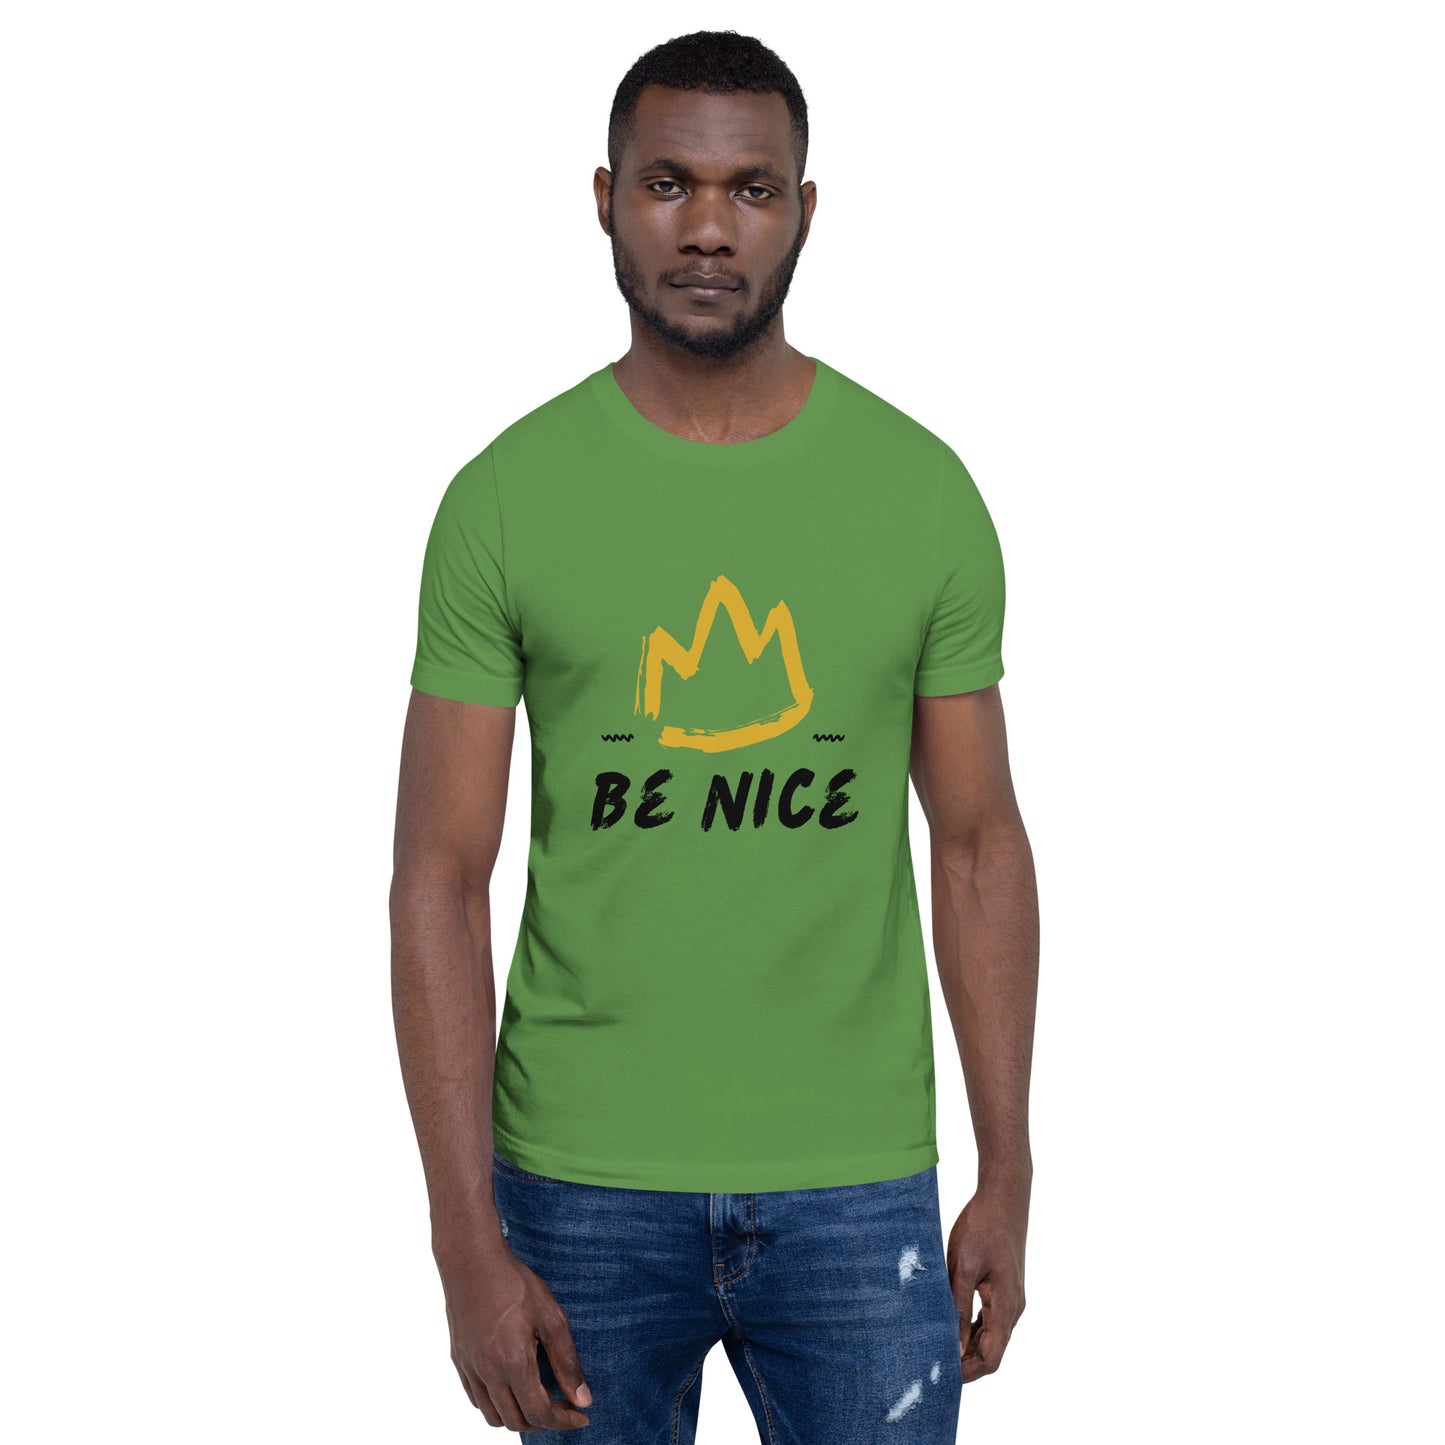 Be Nice t-shirt